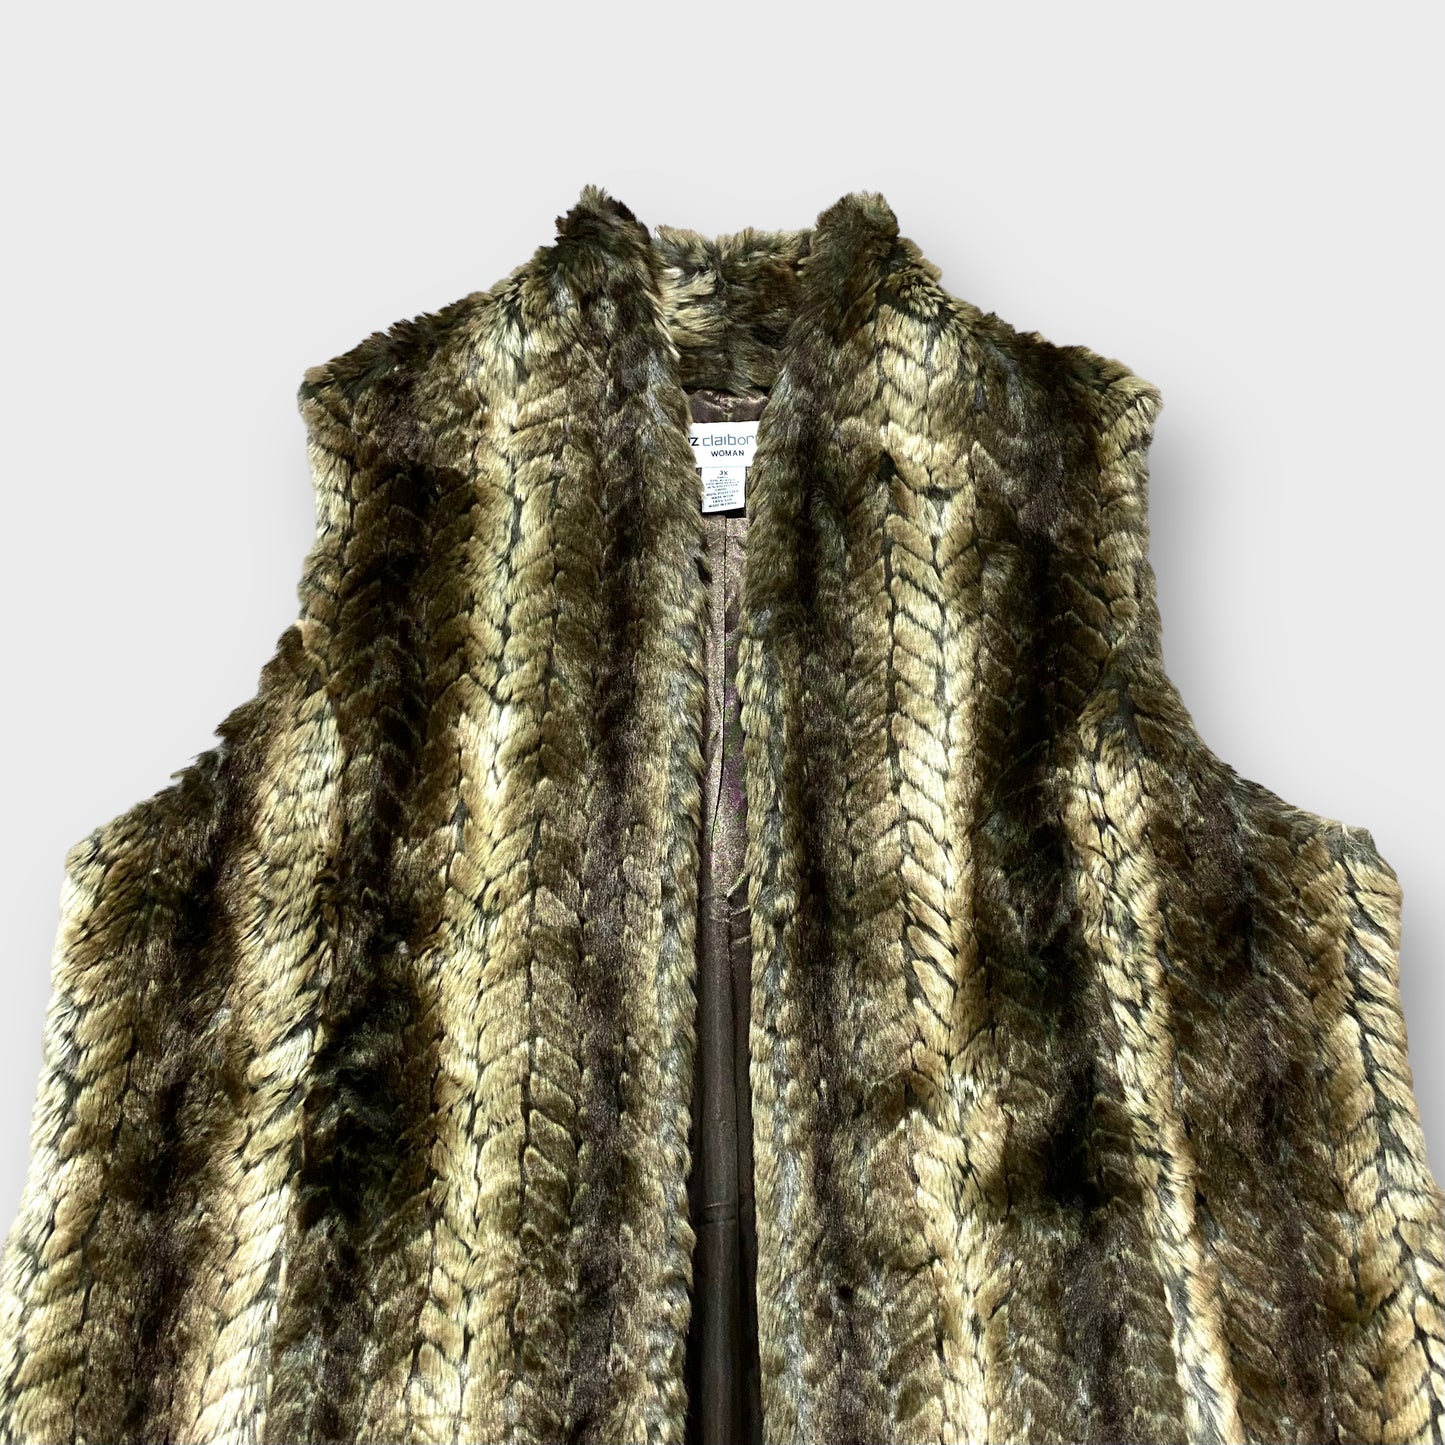 "Liz claibone" Middle length fur vest